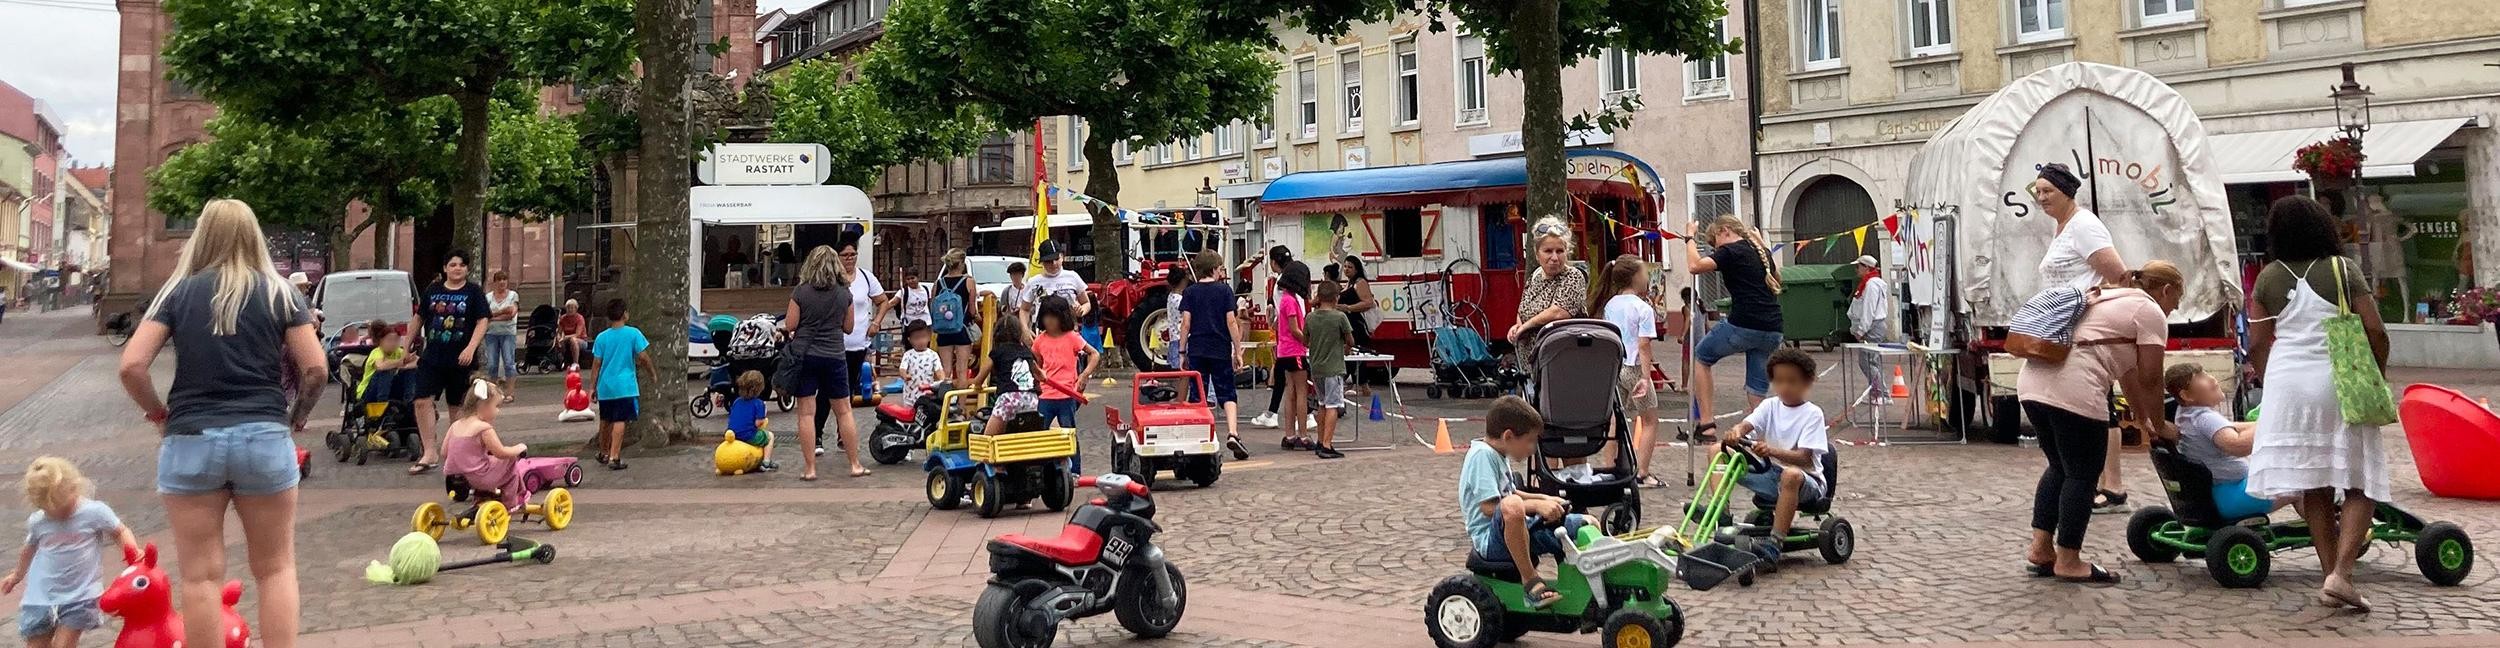 Kinder spielen auf dem Marktplatz in Rastatt